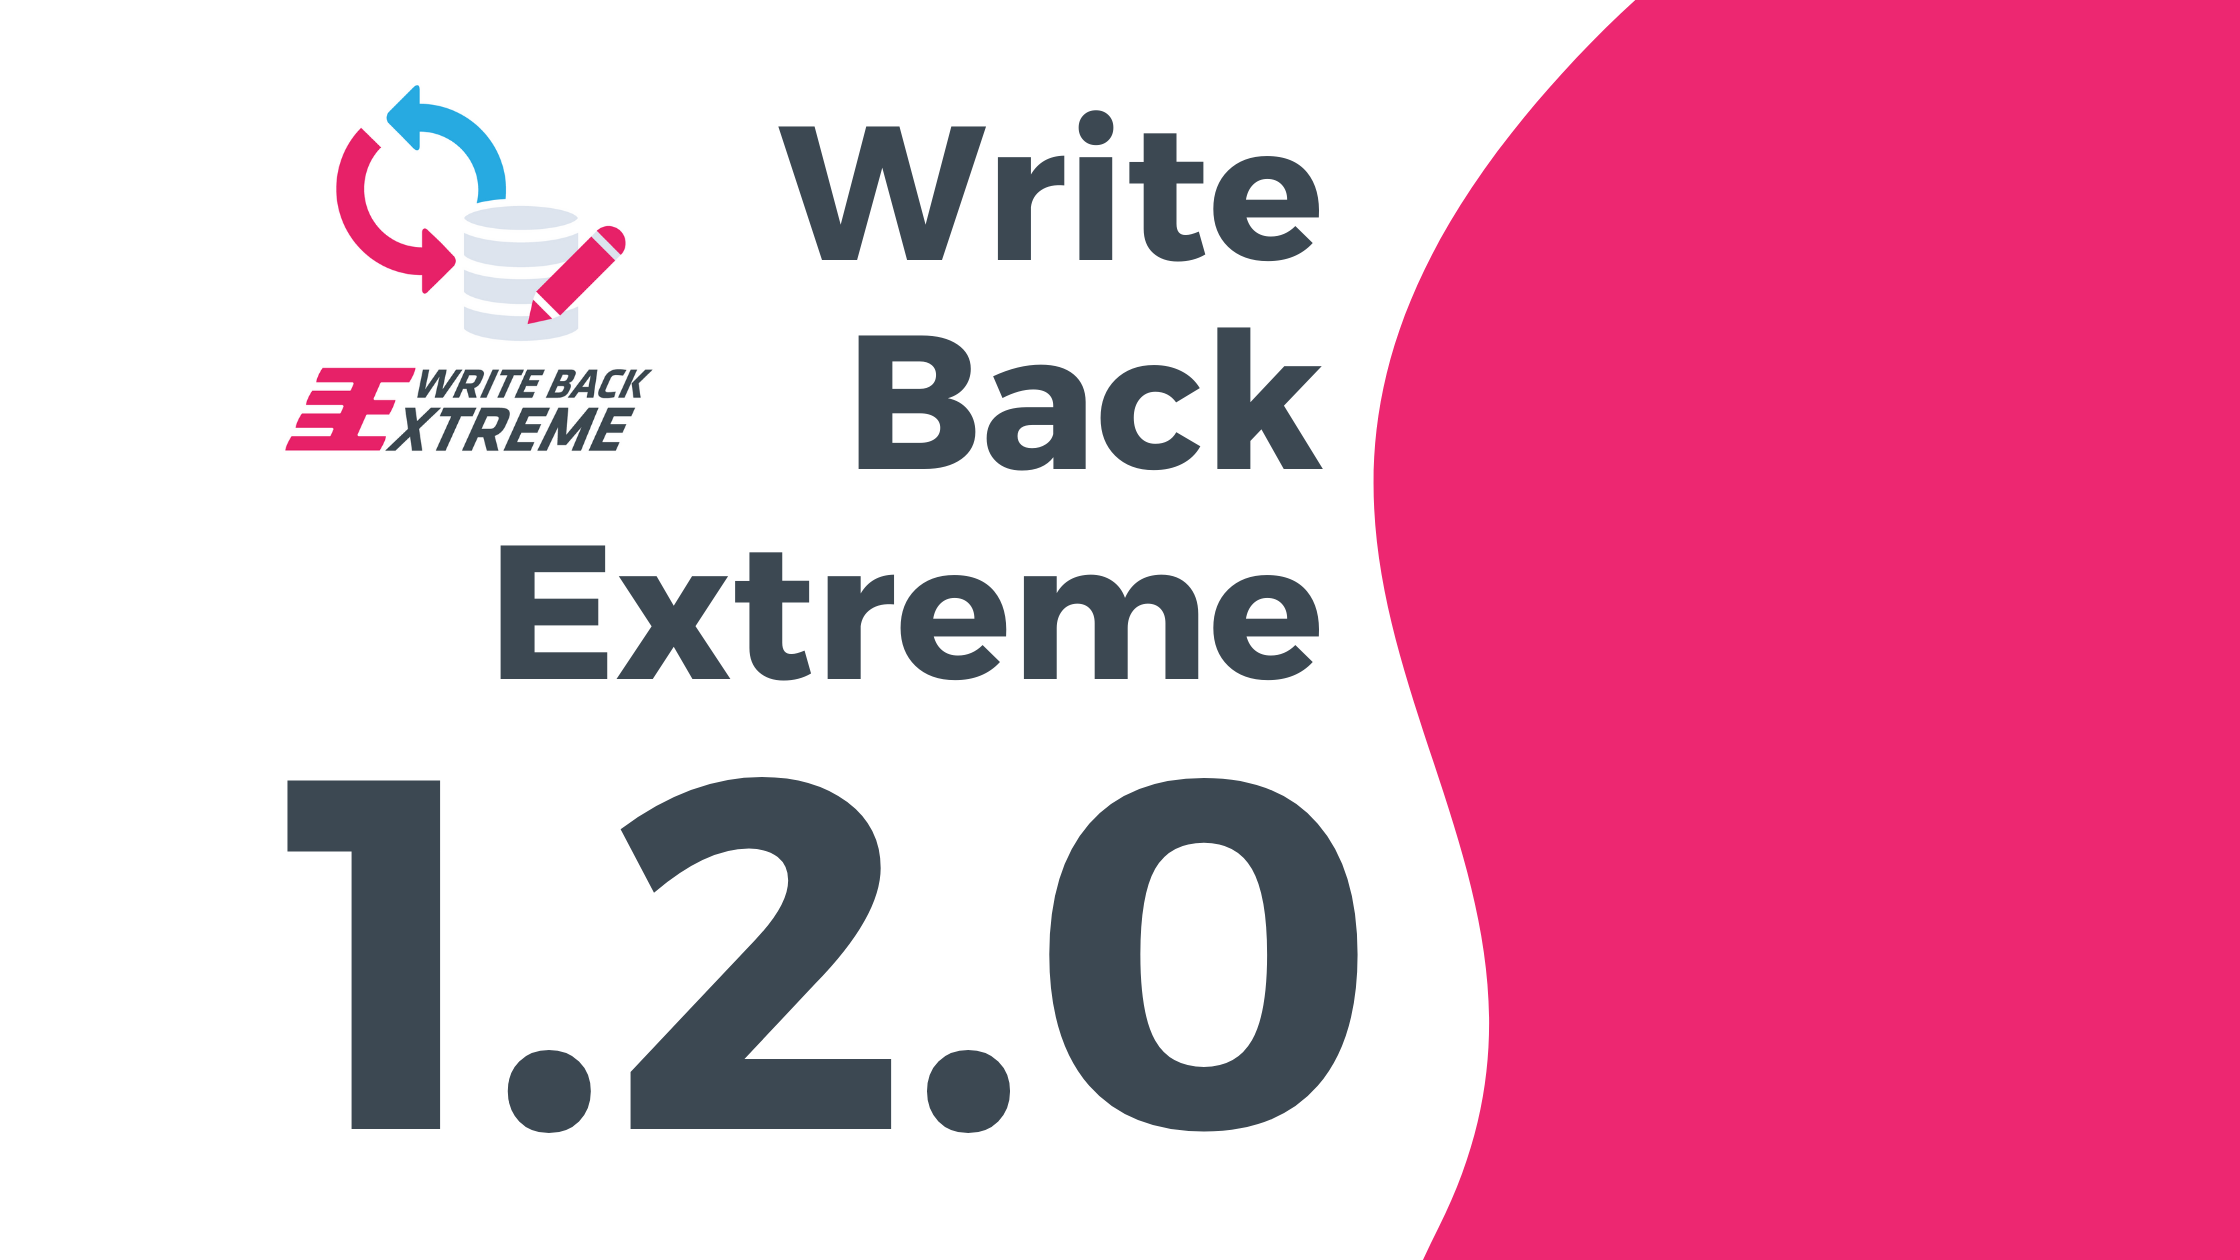 We have released WriteBackExtreme 1.2.0! Product News writebackextreme